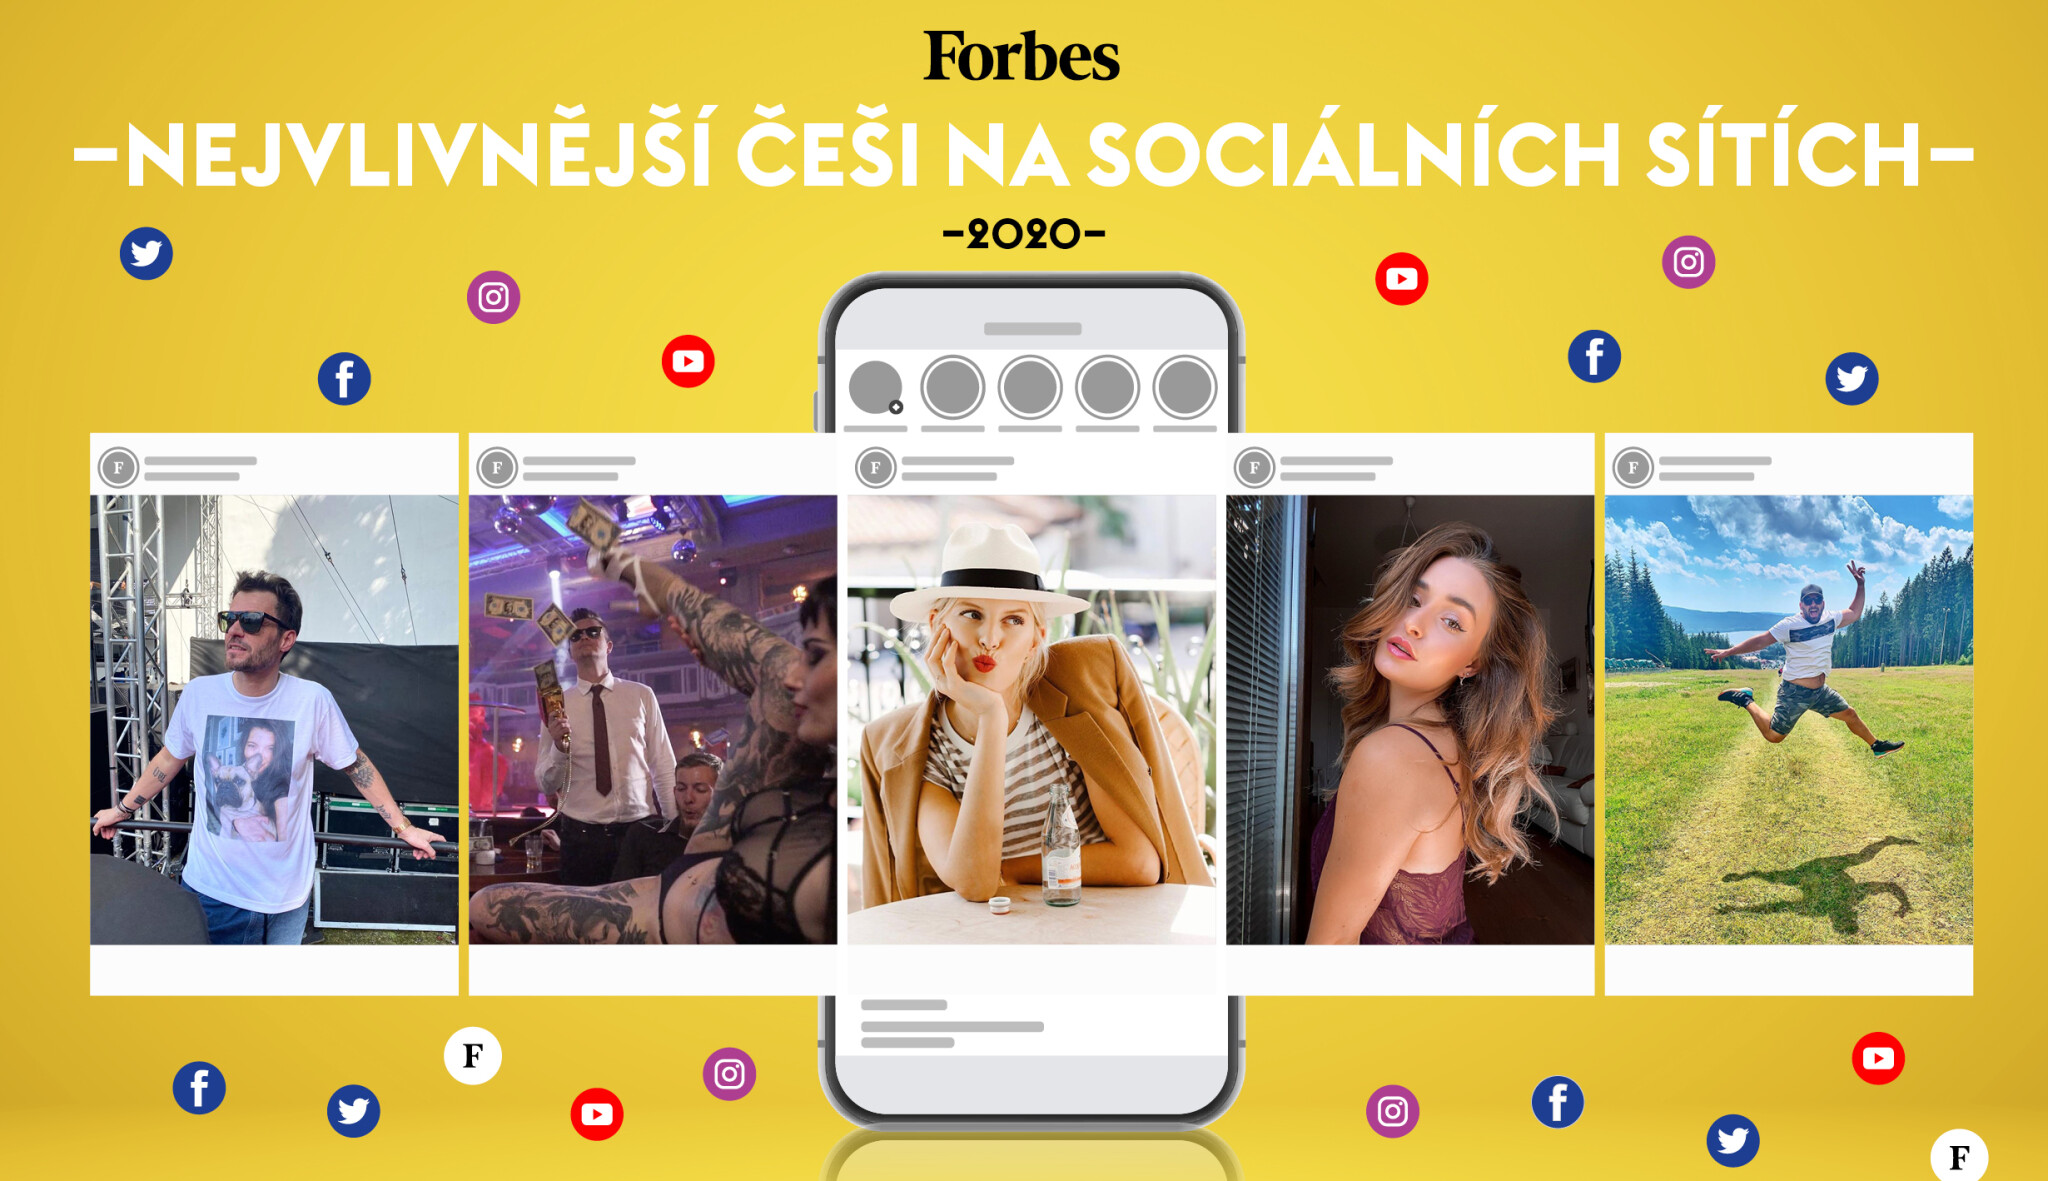 Kovy, Jágr, Mareš. Tohle je 30 nejvlivnějších Čechů a Češek na sociálních sítích roku 2020